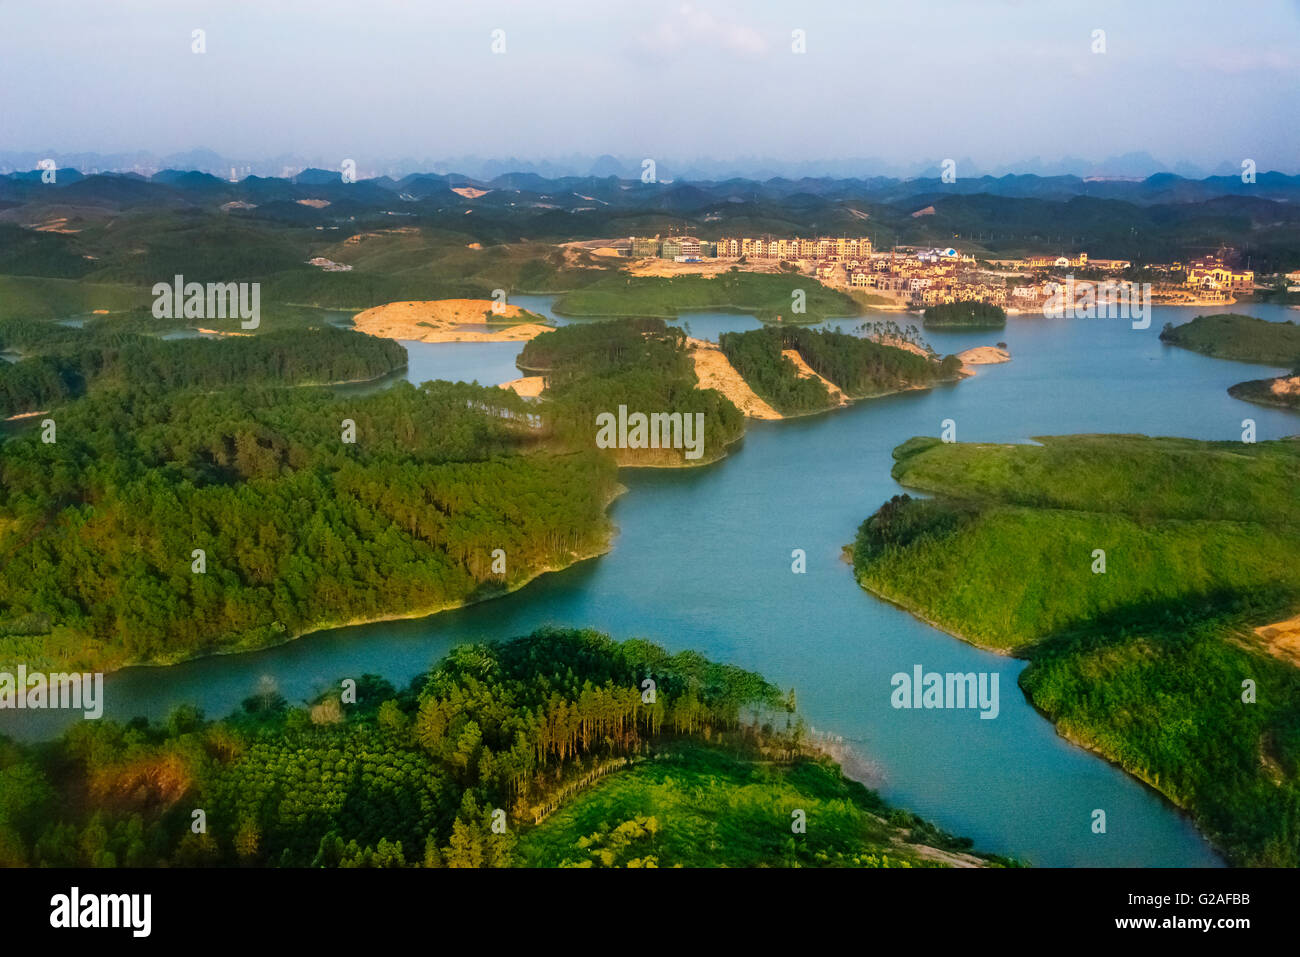 Vue aérienne de la colline de karst et d'eau, dans la province de Guangxi, Chine Banque D'Images